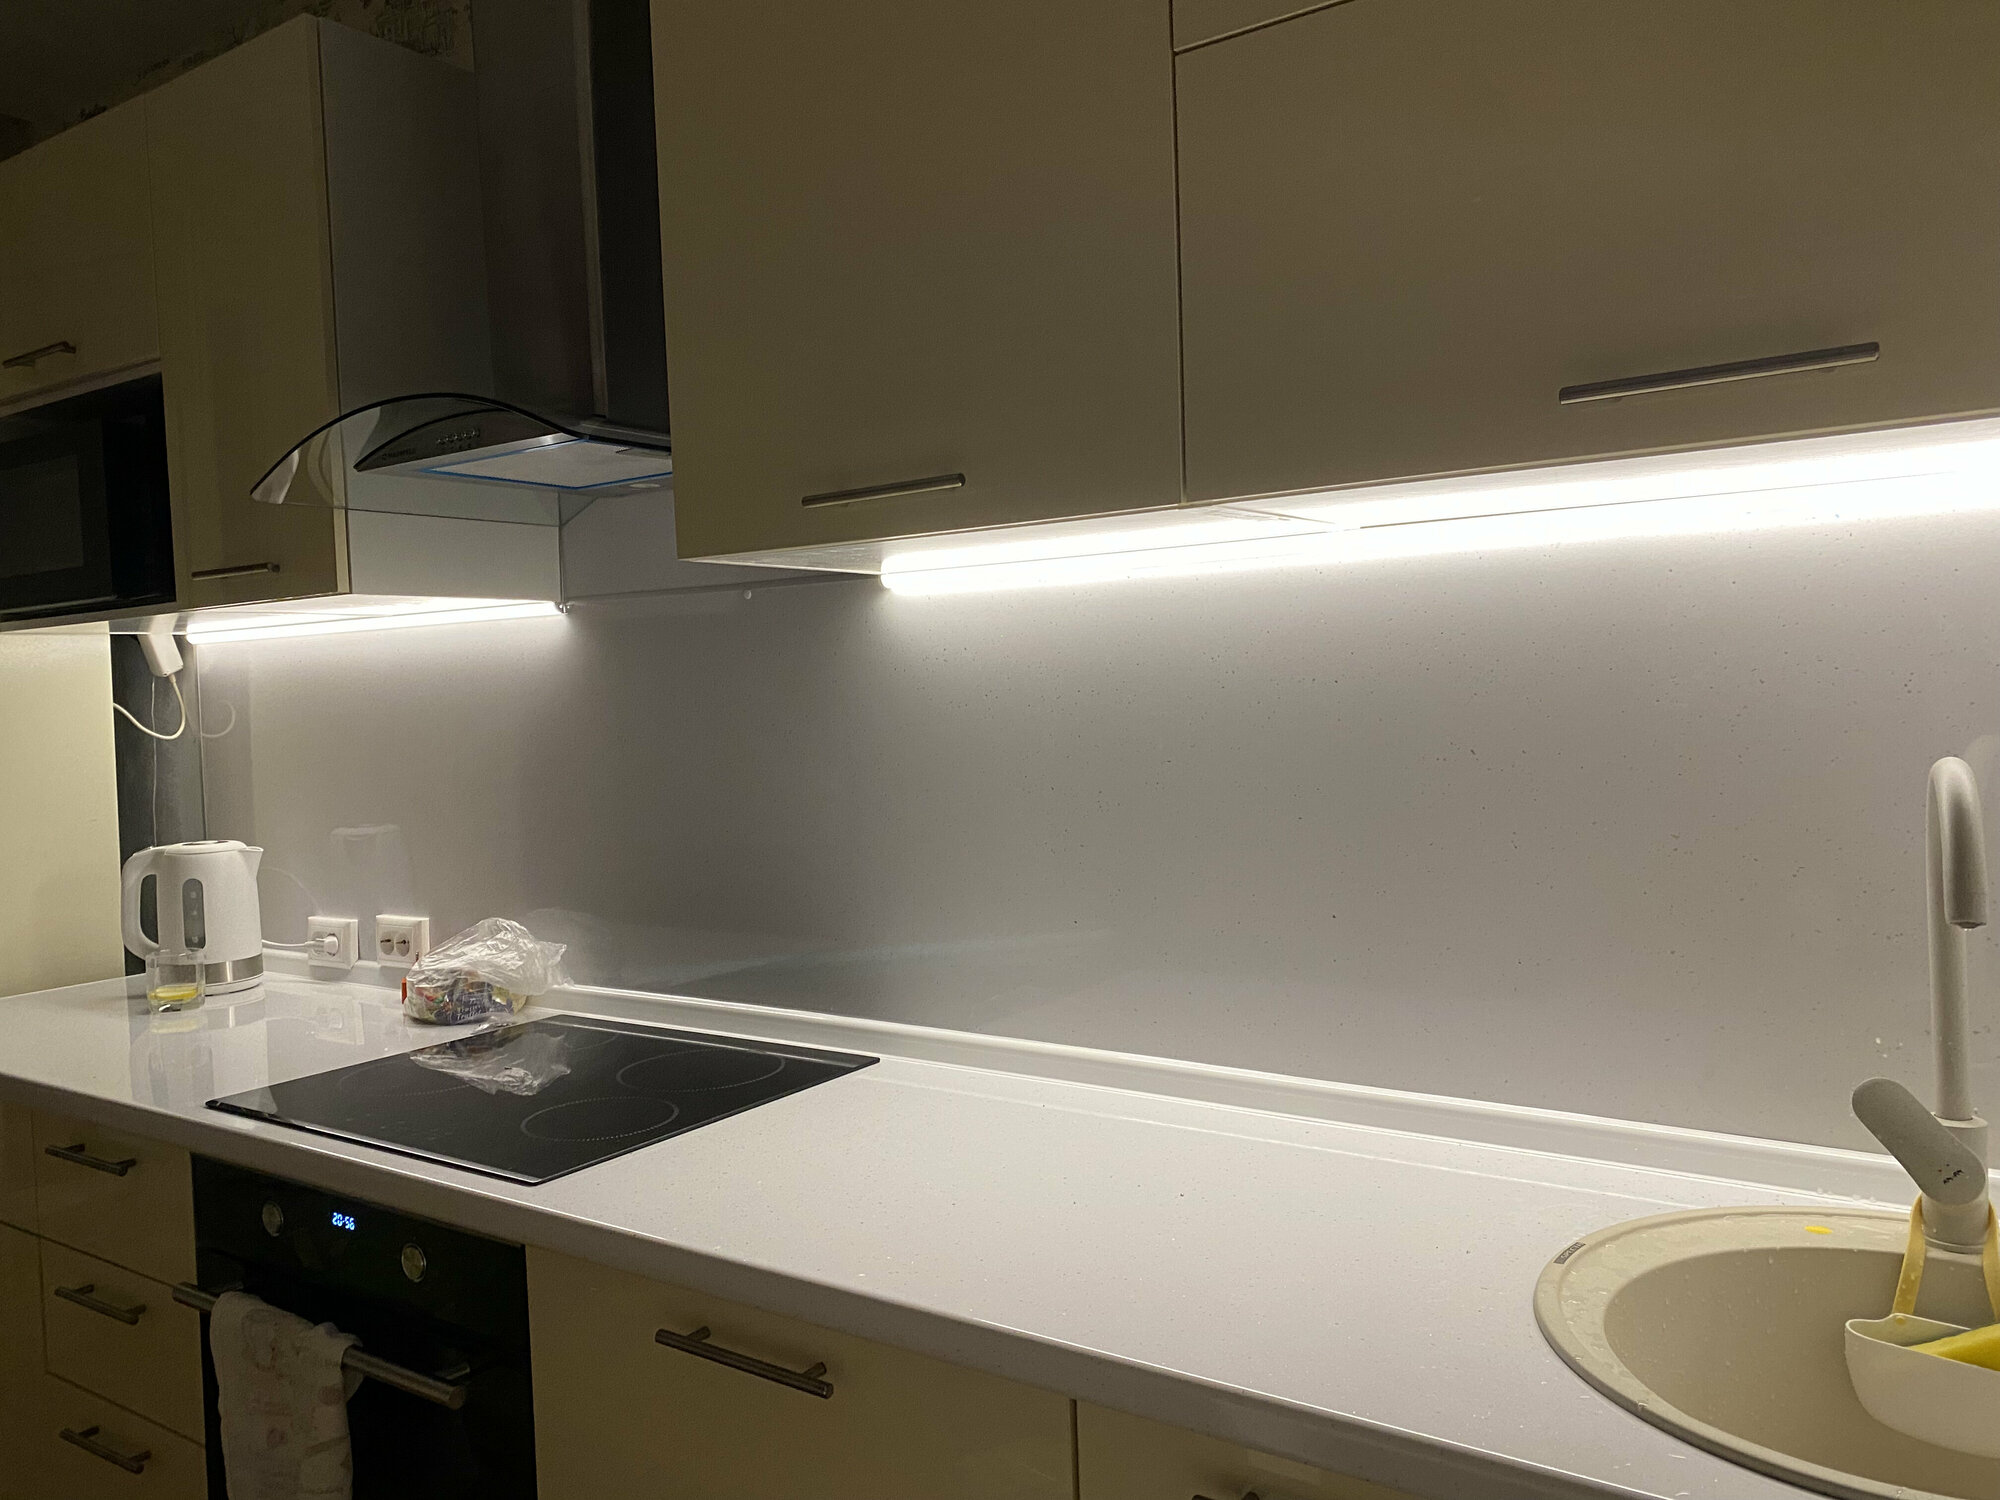 Подсветка для кухни 90 см, сенсорная с возможностью регулировки яркости, Мощность 22Вт. Нейтральный белый 4500К. Комплект